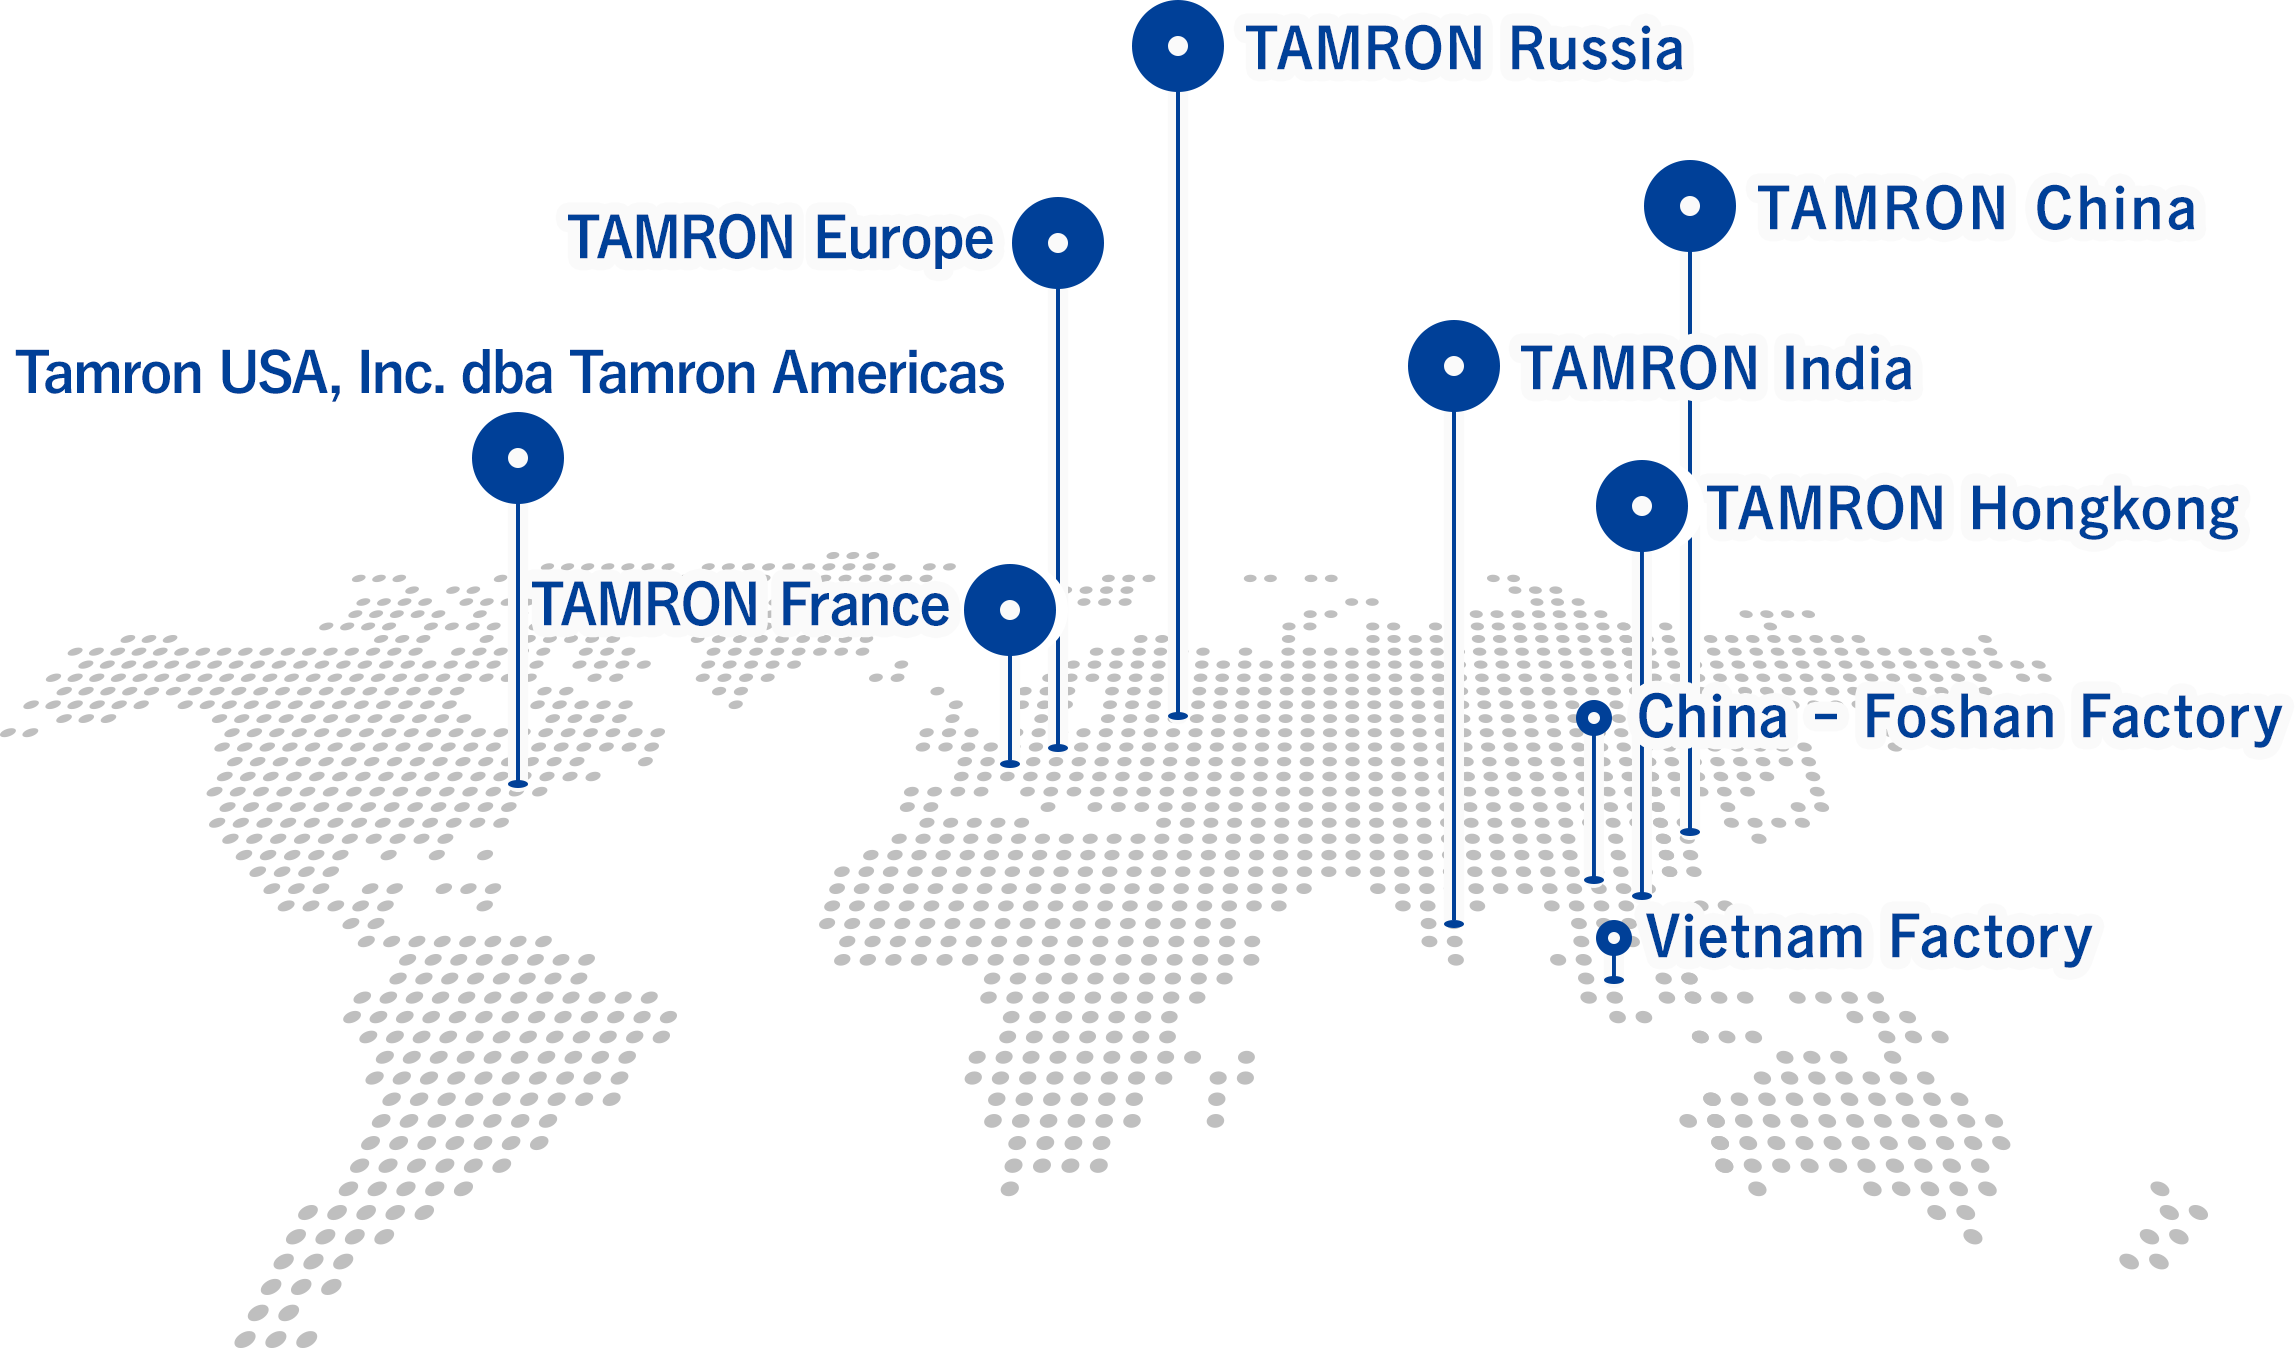 TAMRON Group (Overseas)